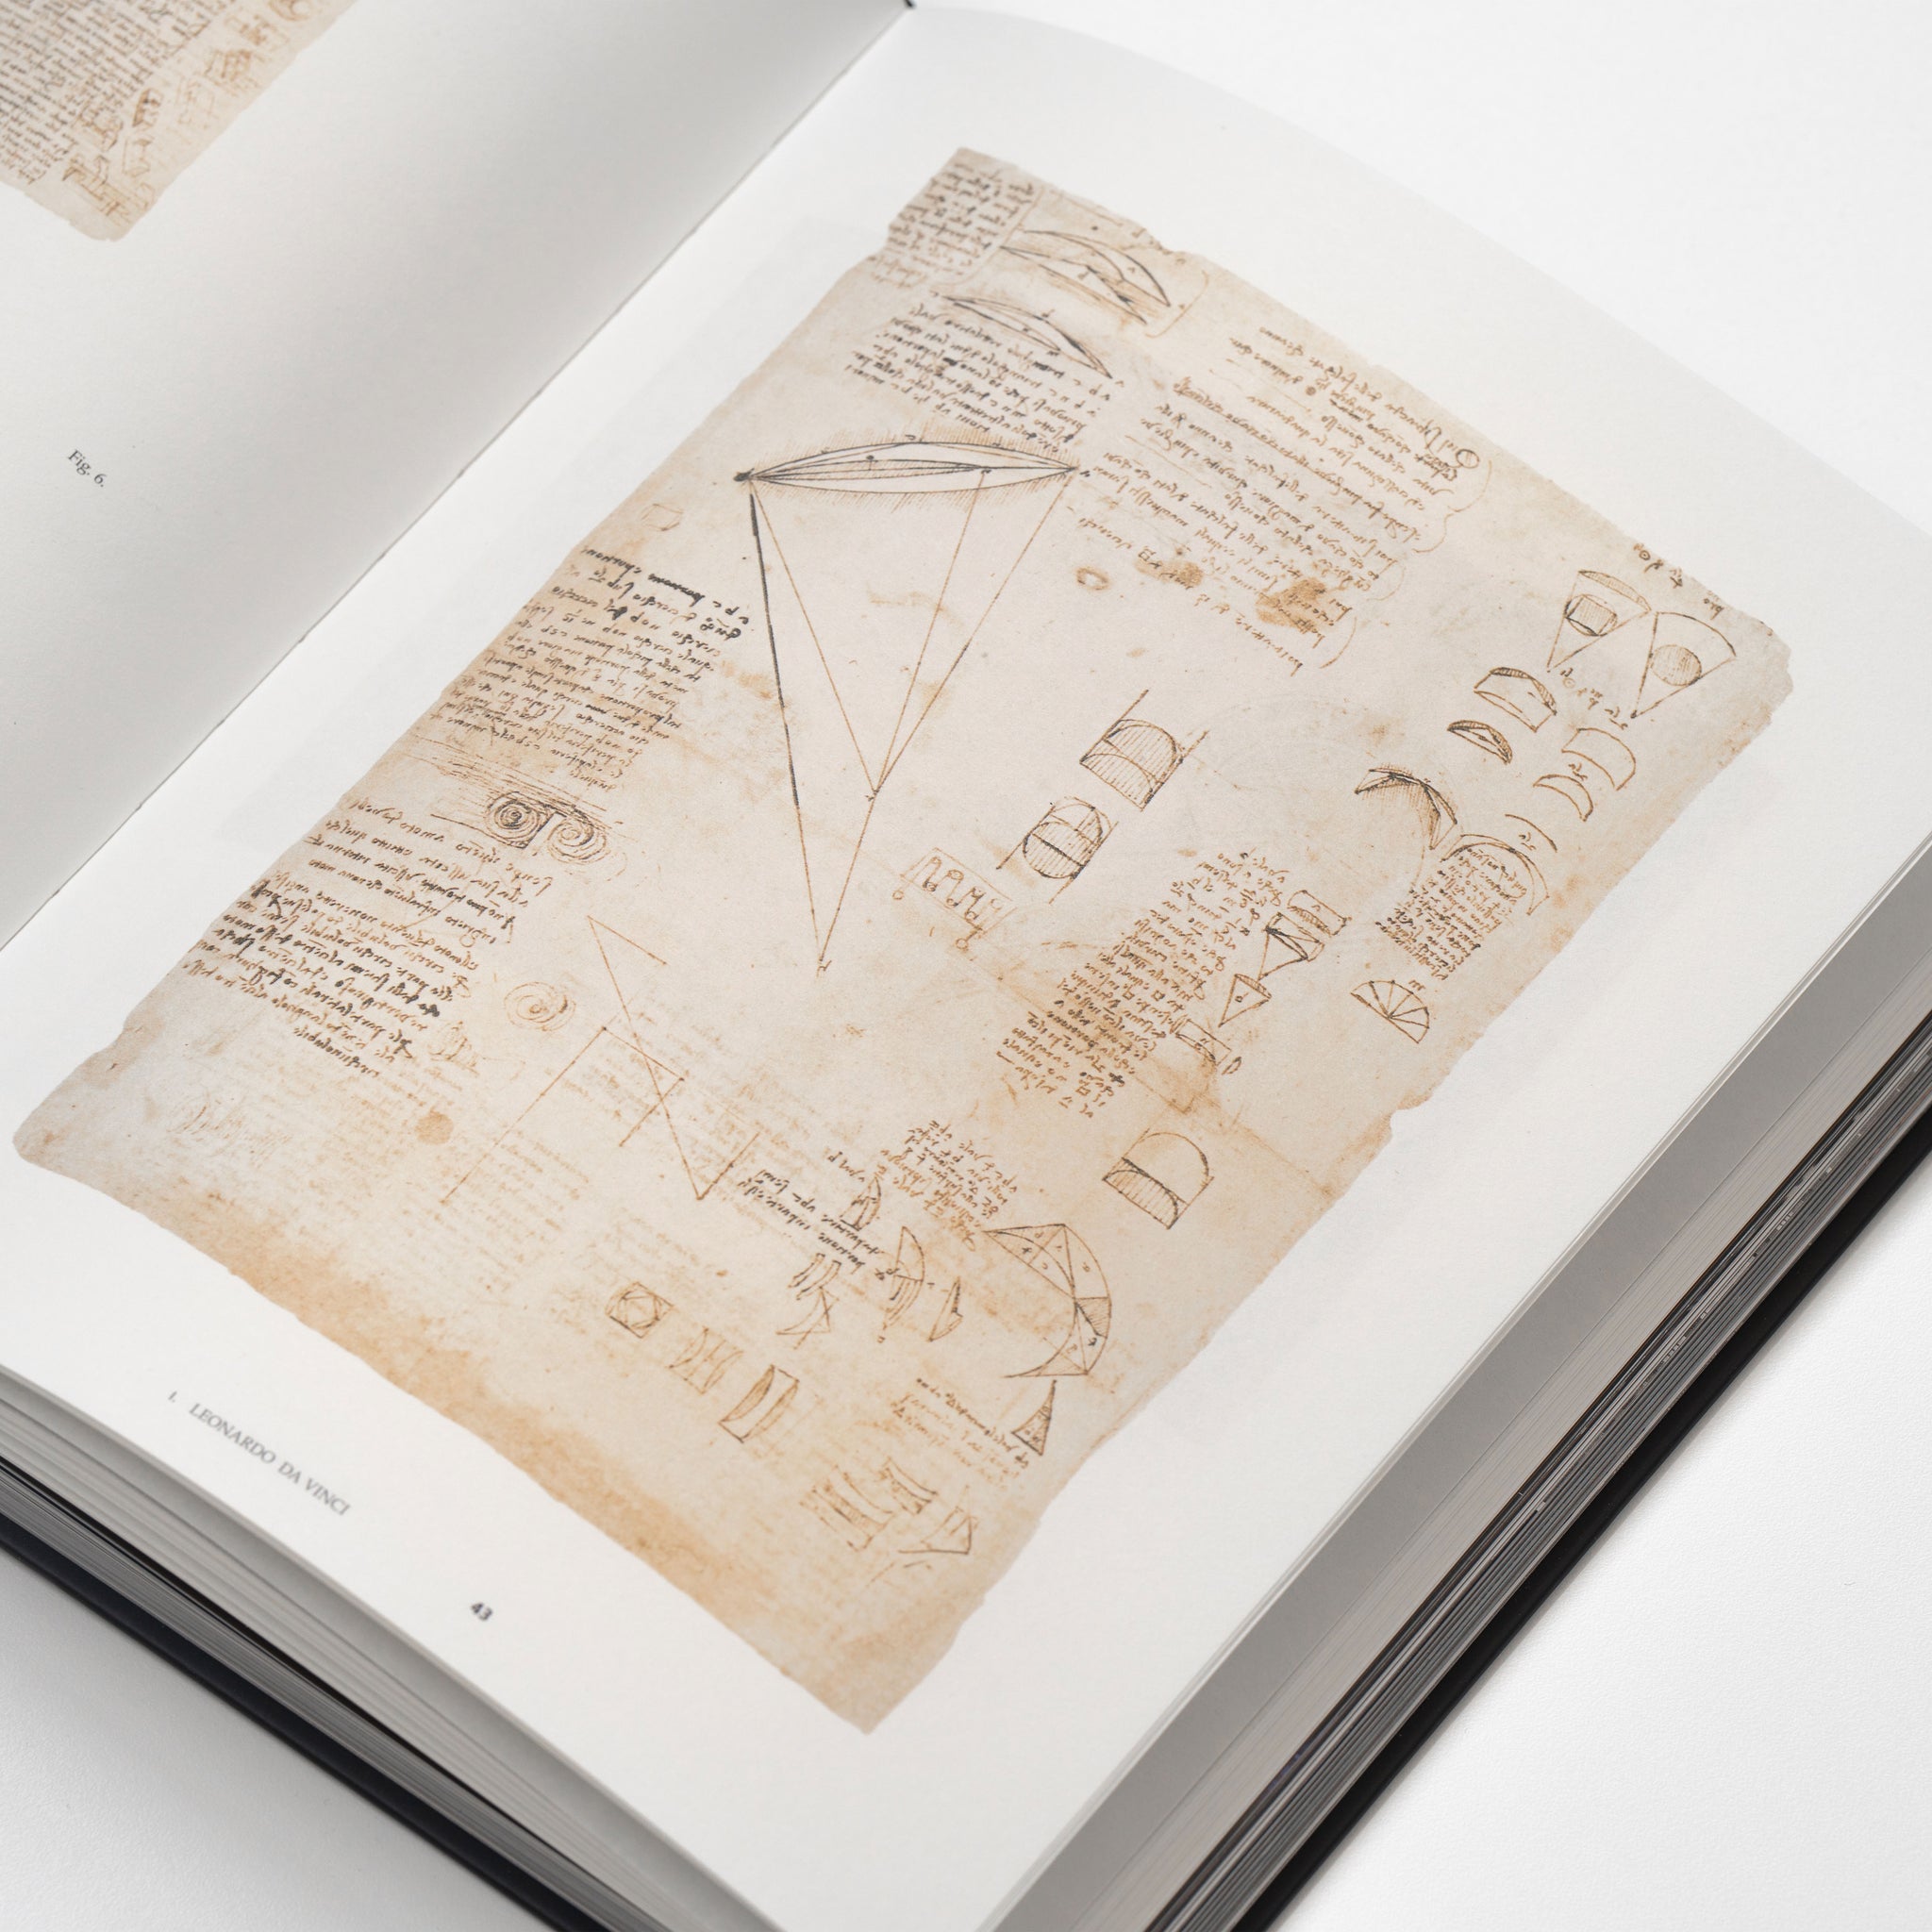 Libro "Utopia. The Shape of Air - From Leonardo da Vinci to Pagani Utopia" | Giunti Editore - Versione Inglese